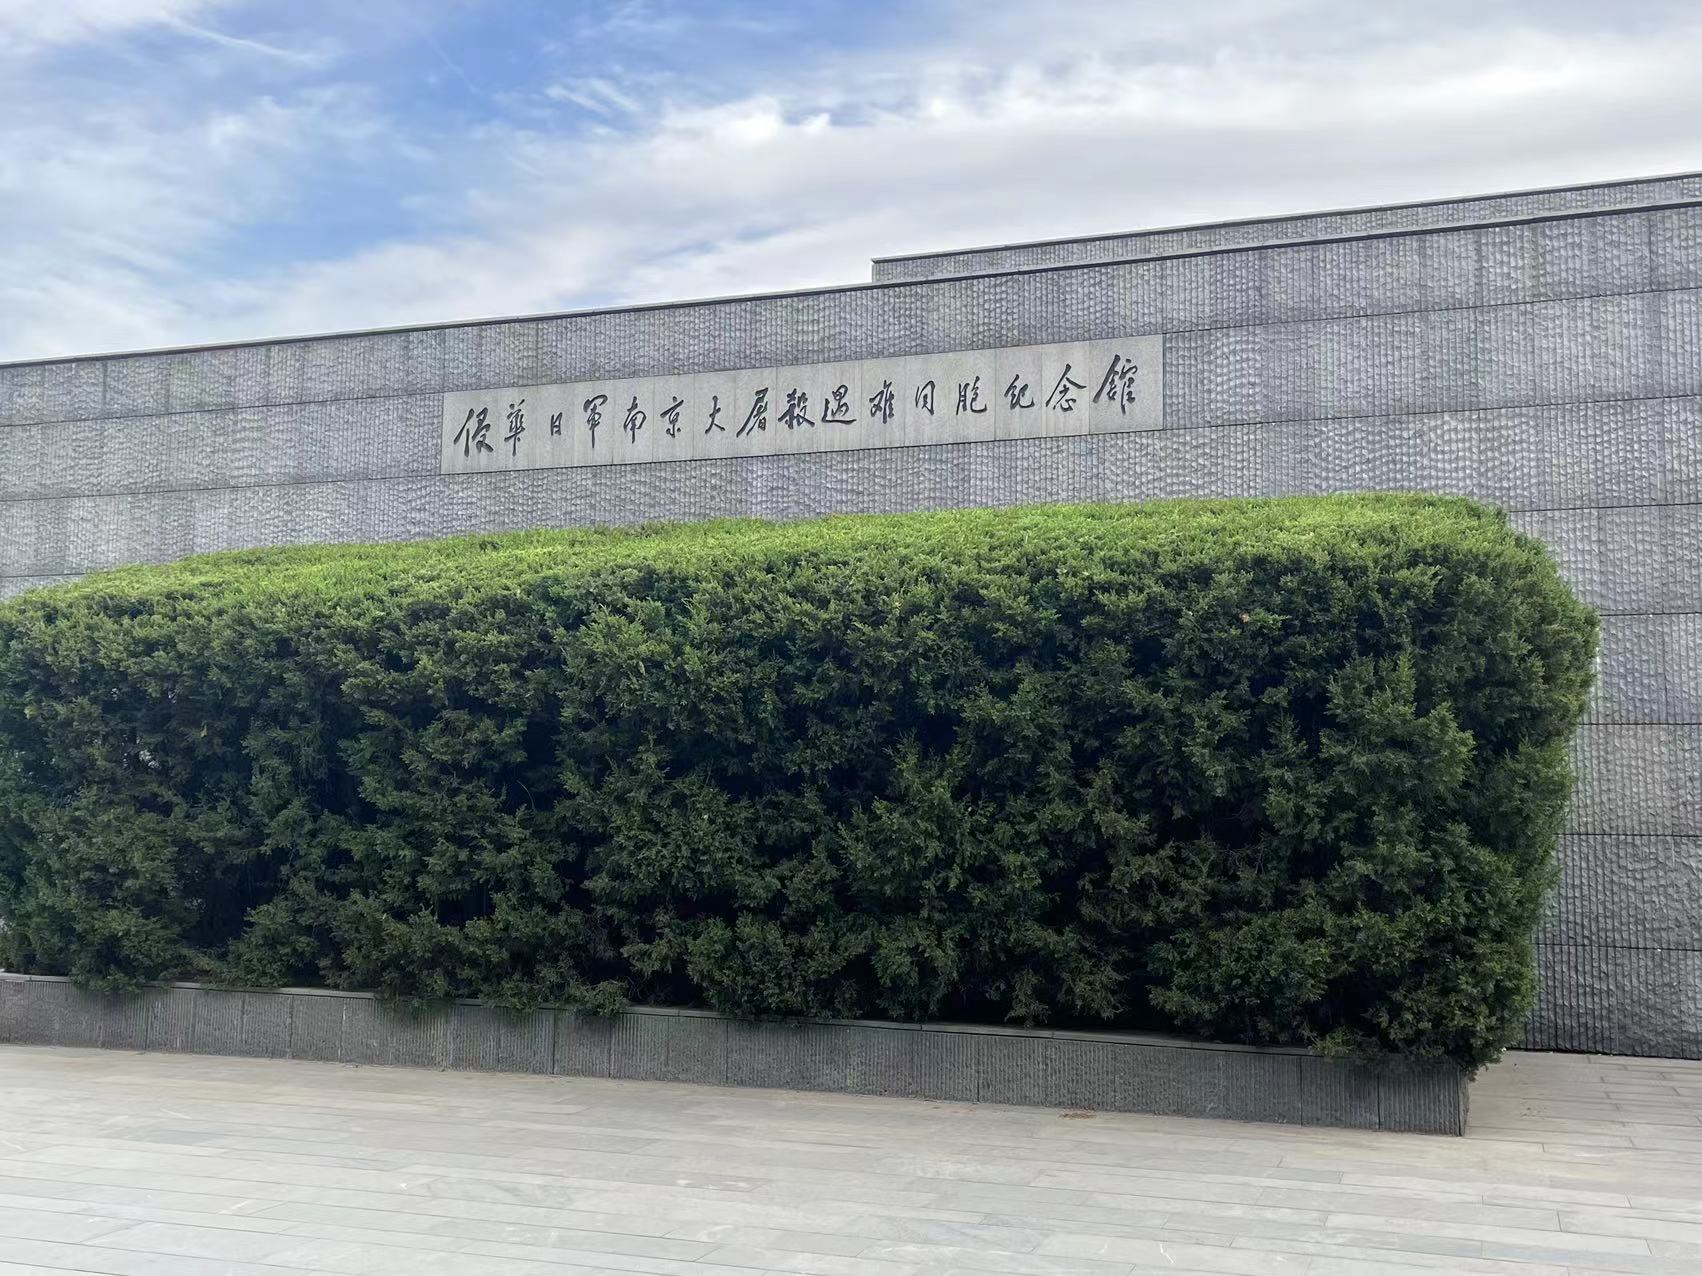 Us bedriuw organisearre in besite oan 'e Memorial Hall of the Victims yn' e Nanjing Massacre